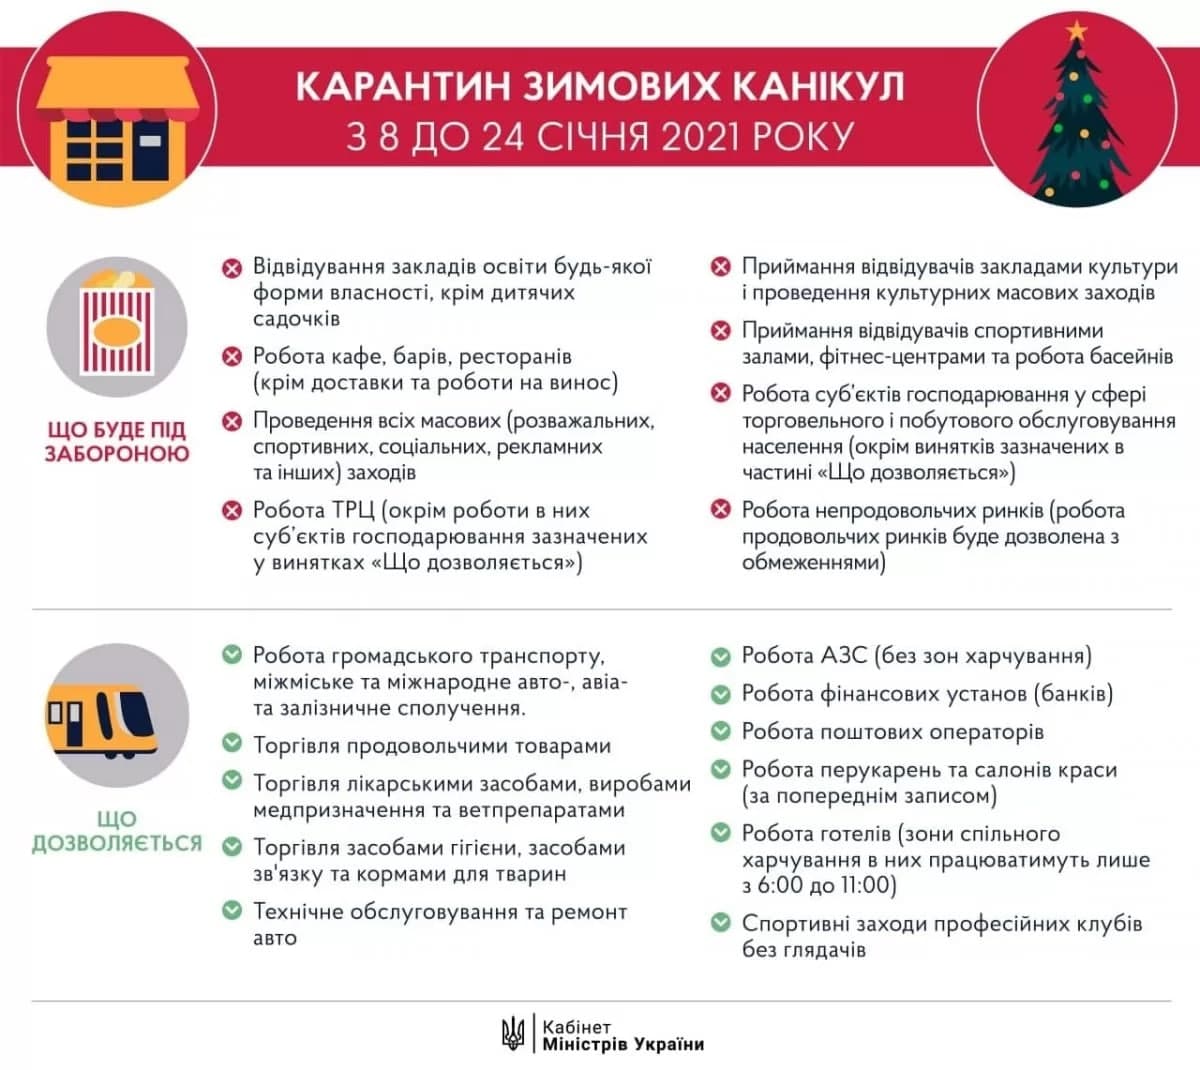 Кабинет министров опубликовал инфографик январского локдауна в Украине